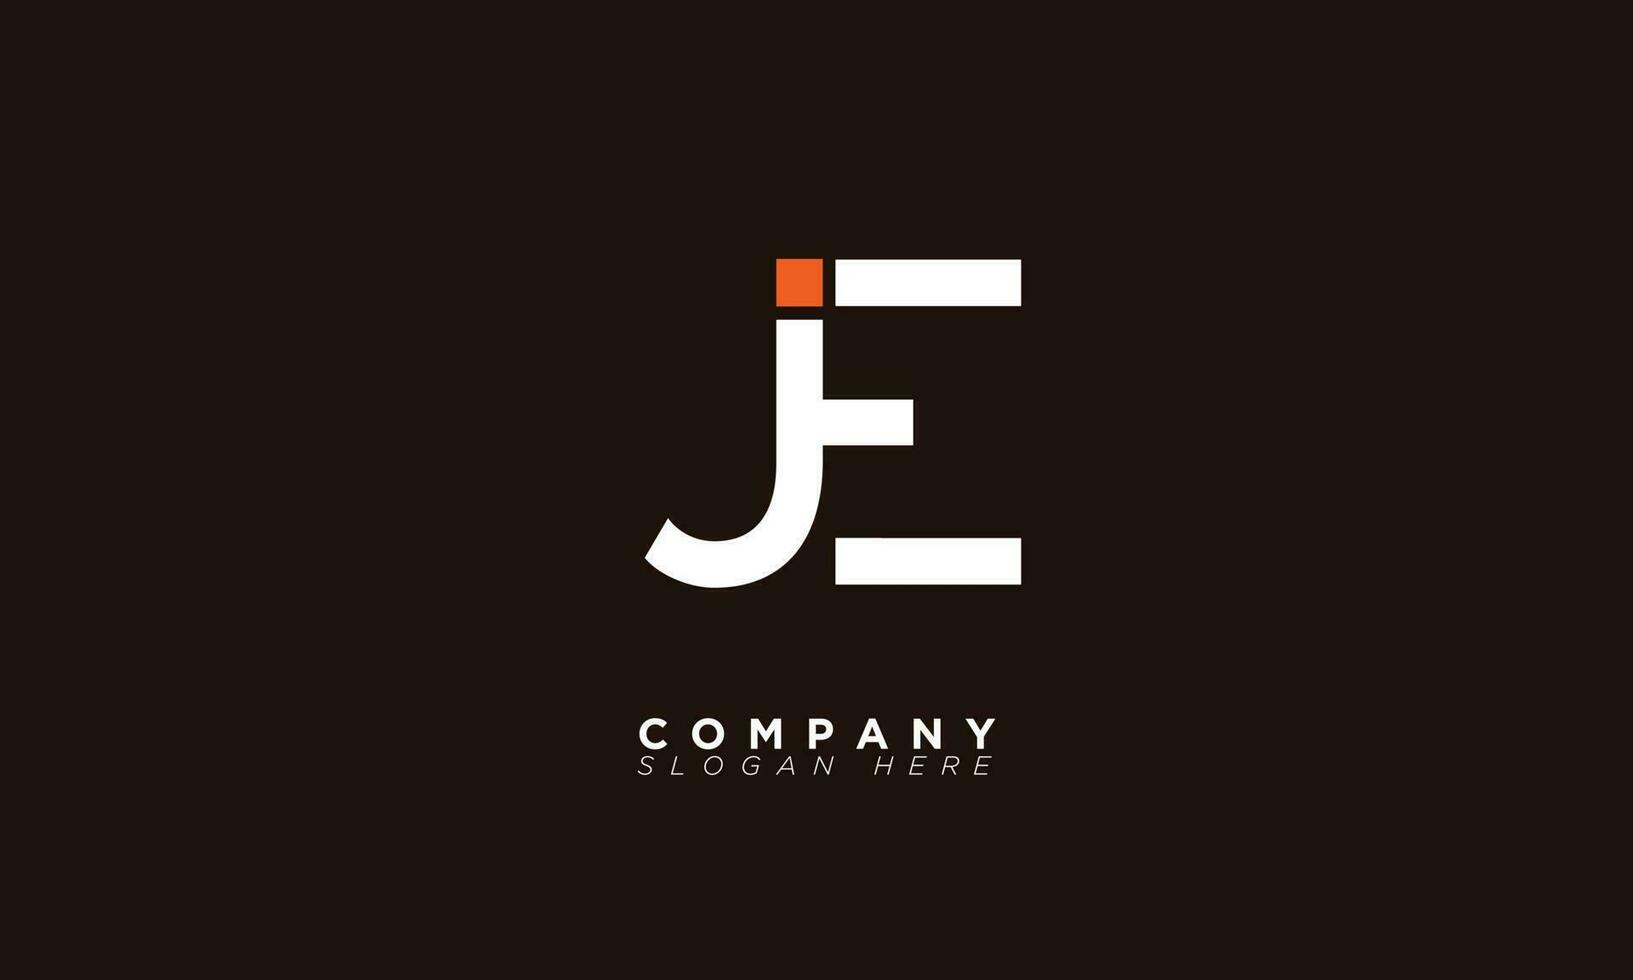 JE Alphabet letters Initials Monogram logo EJ, J and E vector